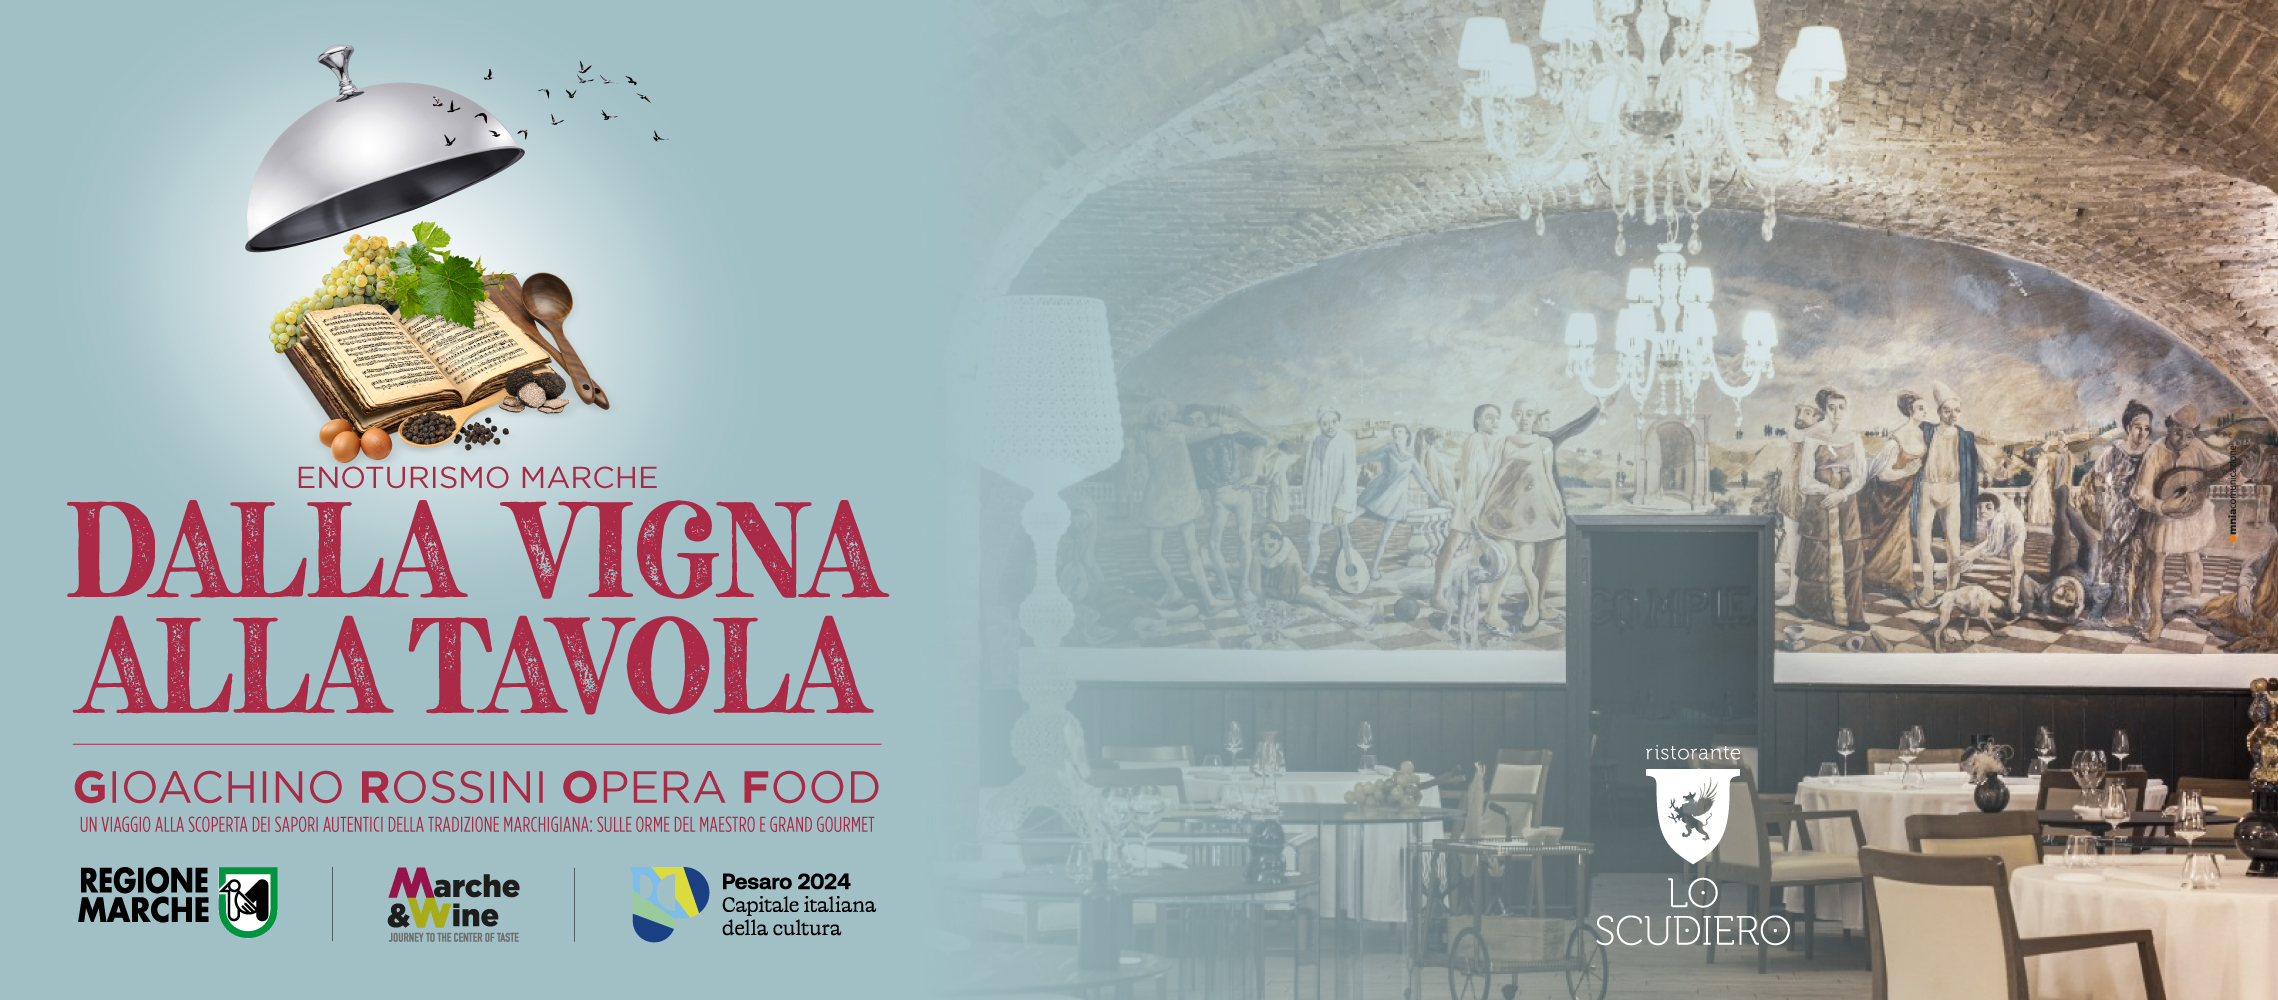 Dalla vigna alla tavola 2024: Gioachino Rossini Opera Food